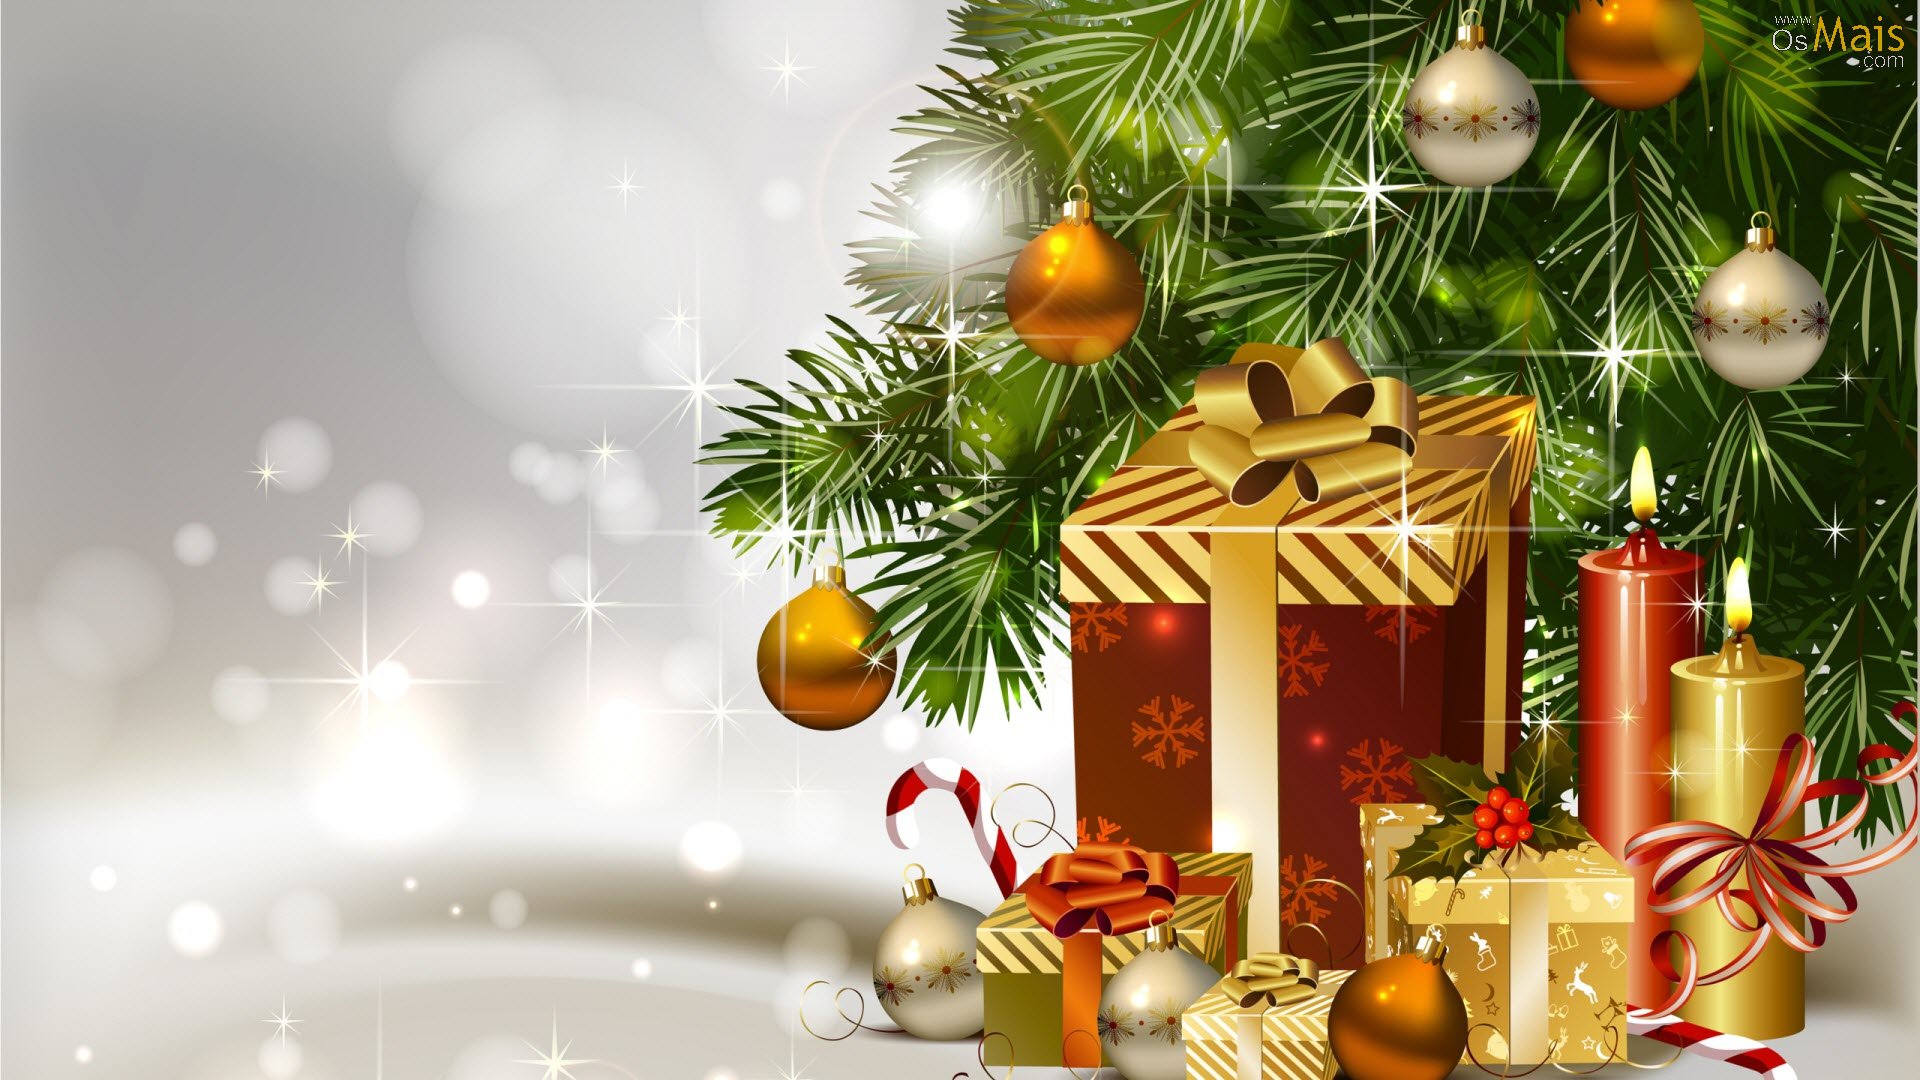 papel pintado natal,decoración navideña,decoración navideña,árbol de navidad,navidad,nochebuena